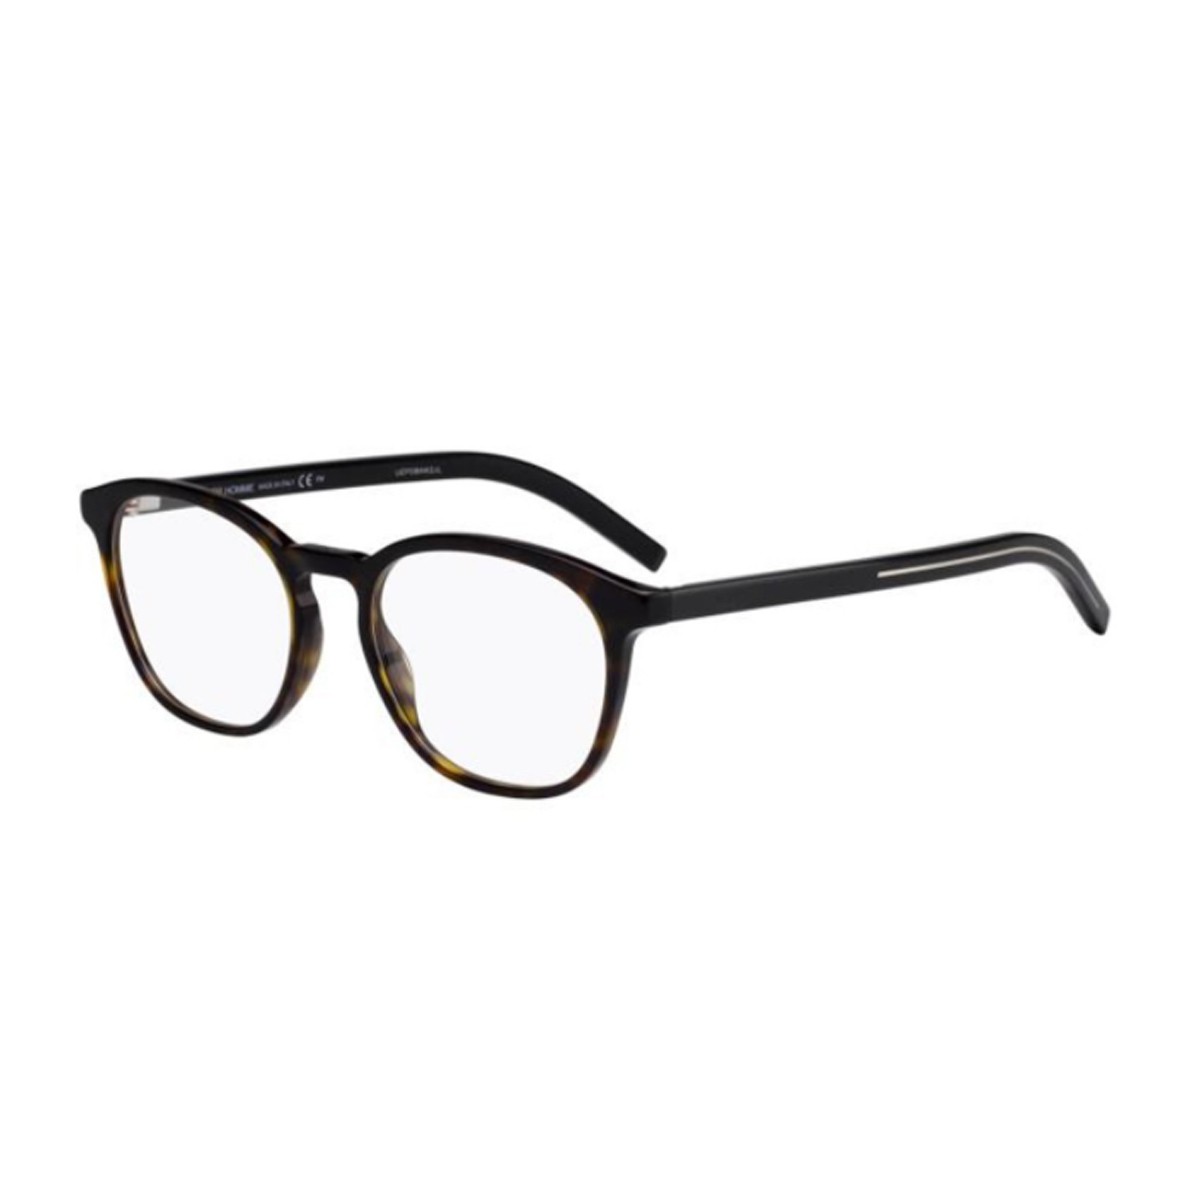 Dior Blacktie 260 | Men's eyeglasses